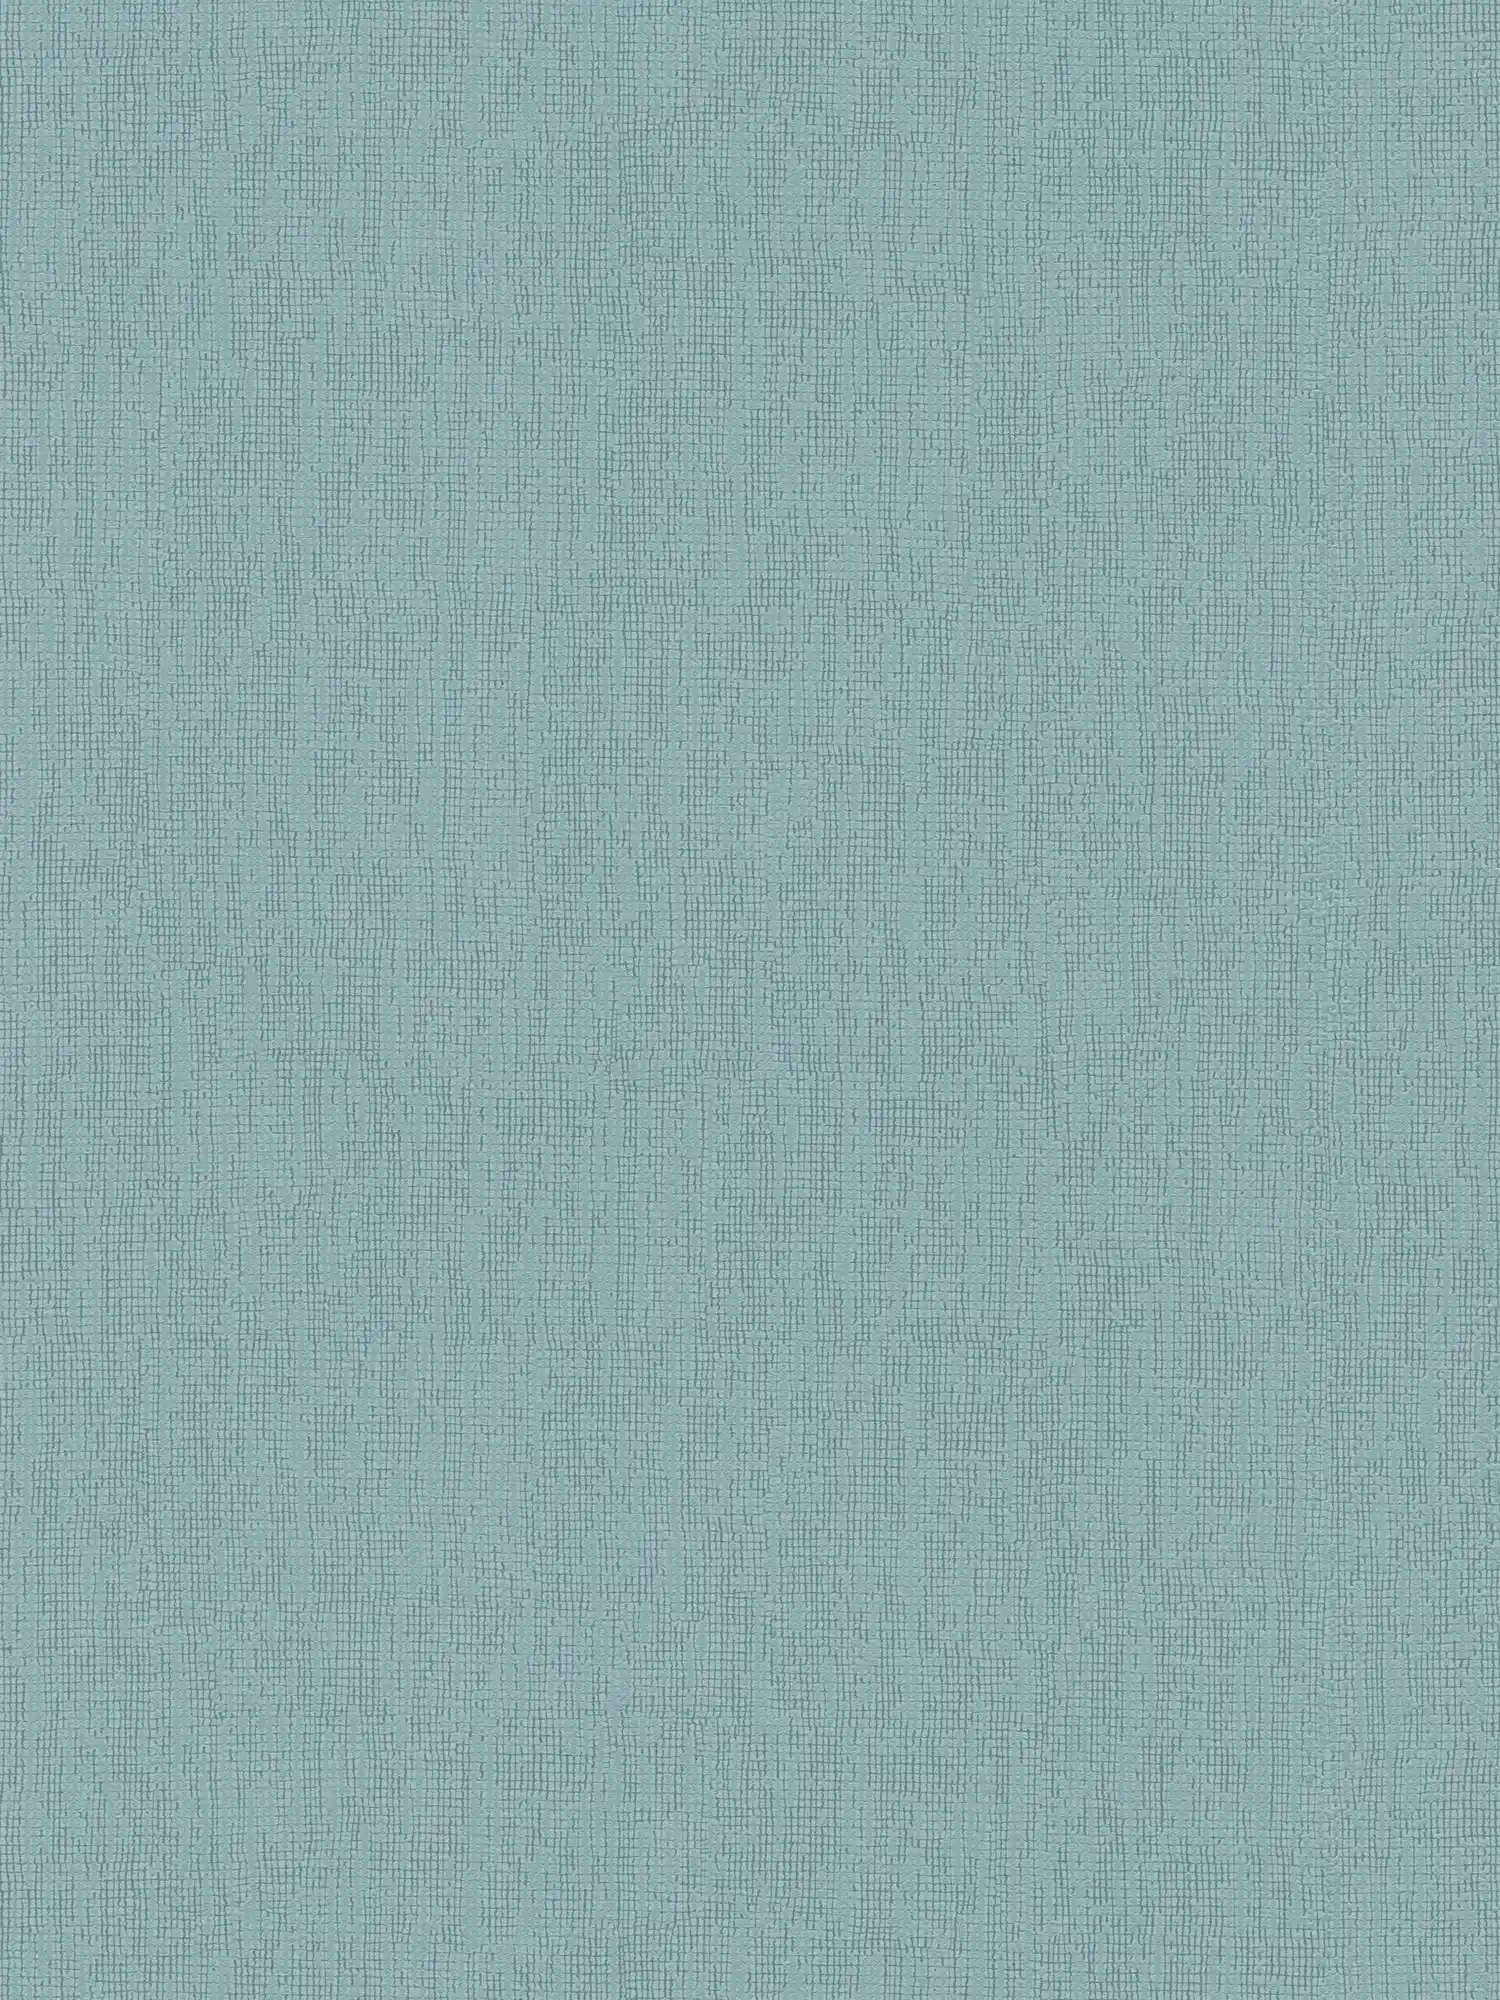 Carta da parati azzurra monocromatica con dettagli texture, stile Scandi
